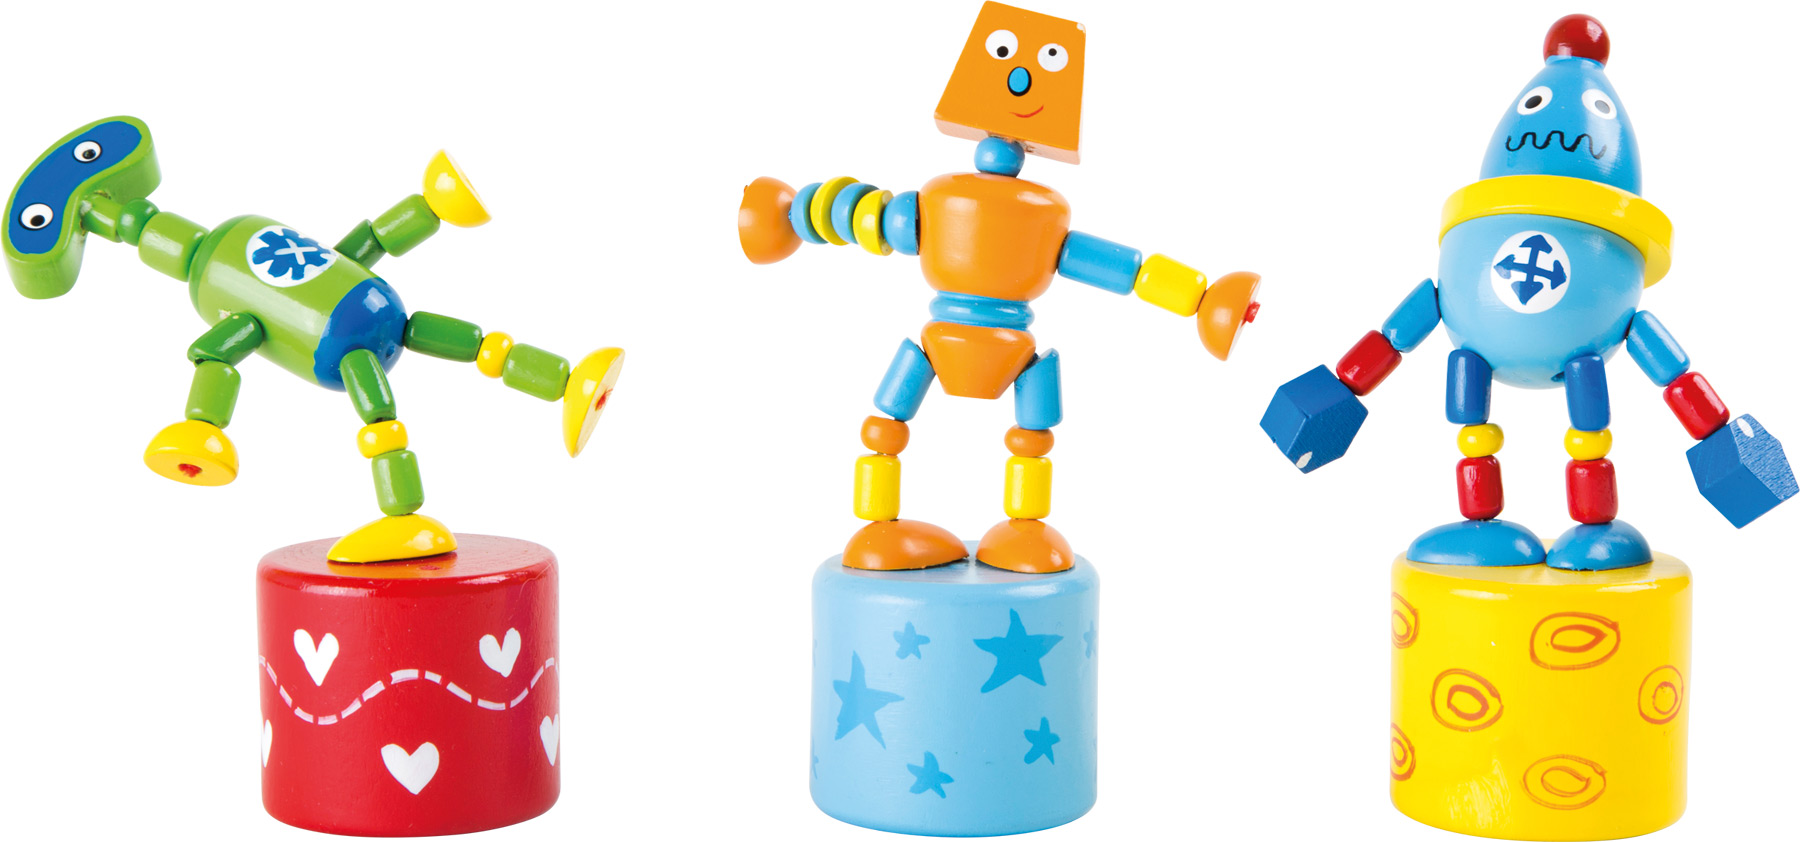 Включи роботы пальчики. Деревянный робот. Игрушки робот зек. Роботы галактикваыпыафи игрушки. Роботы пальчики.